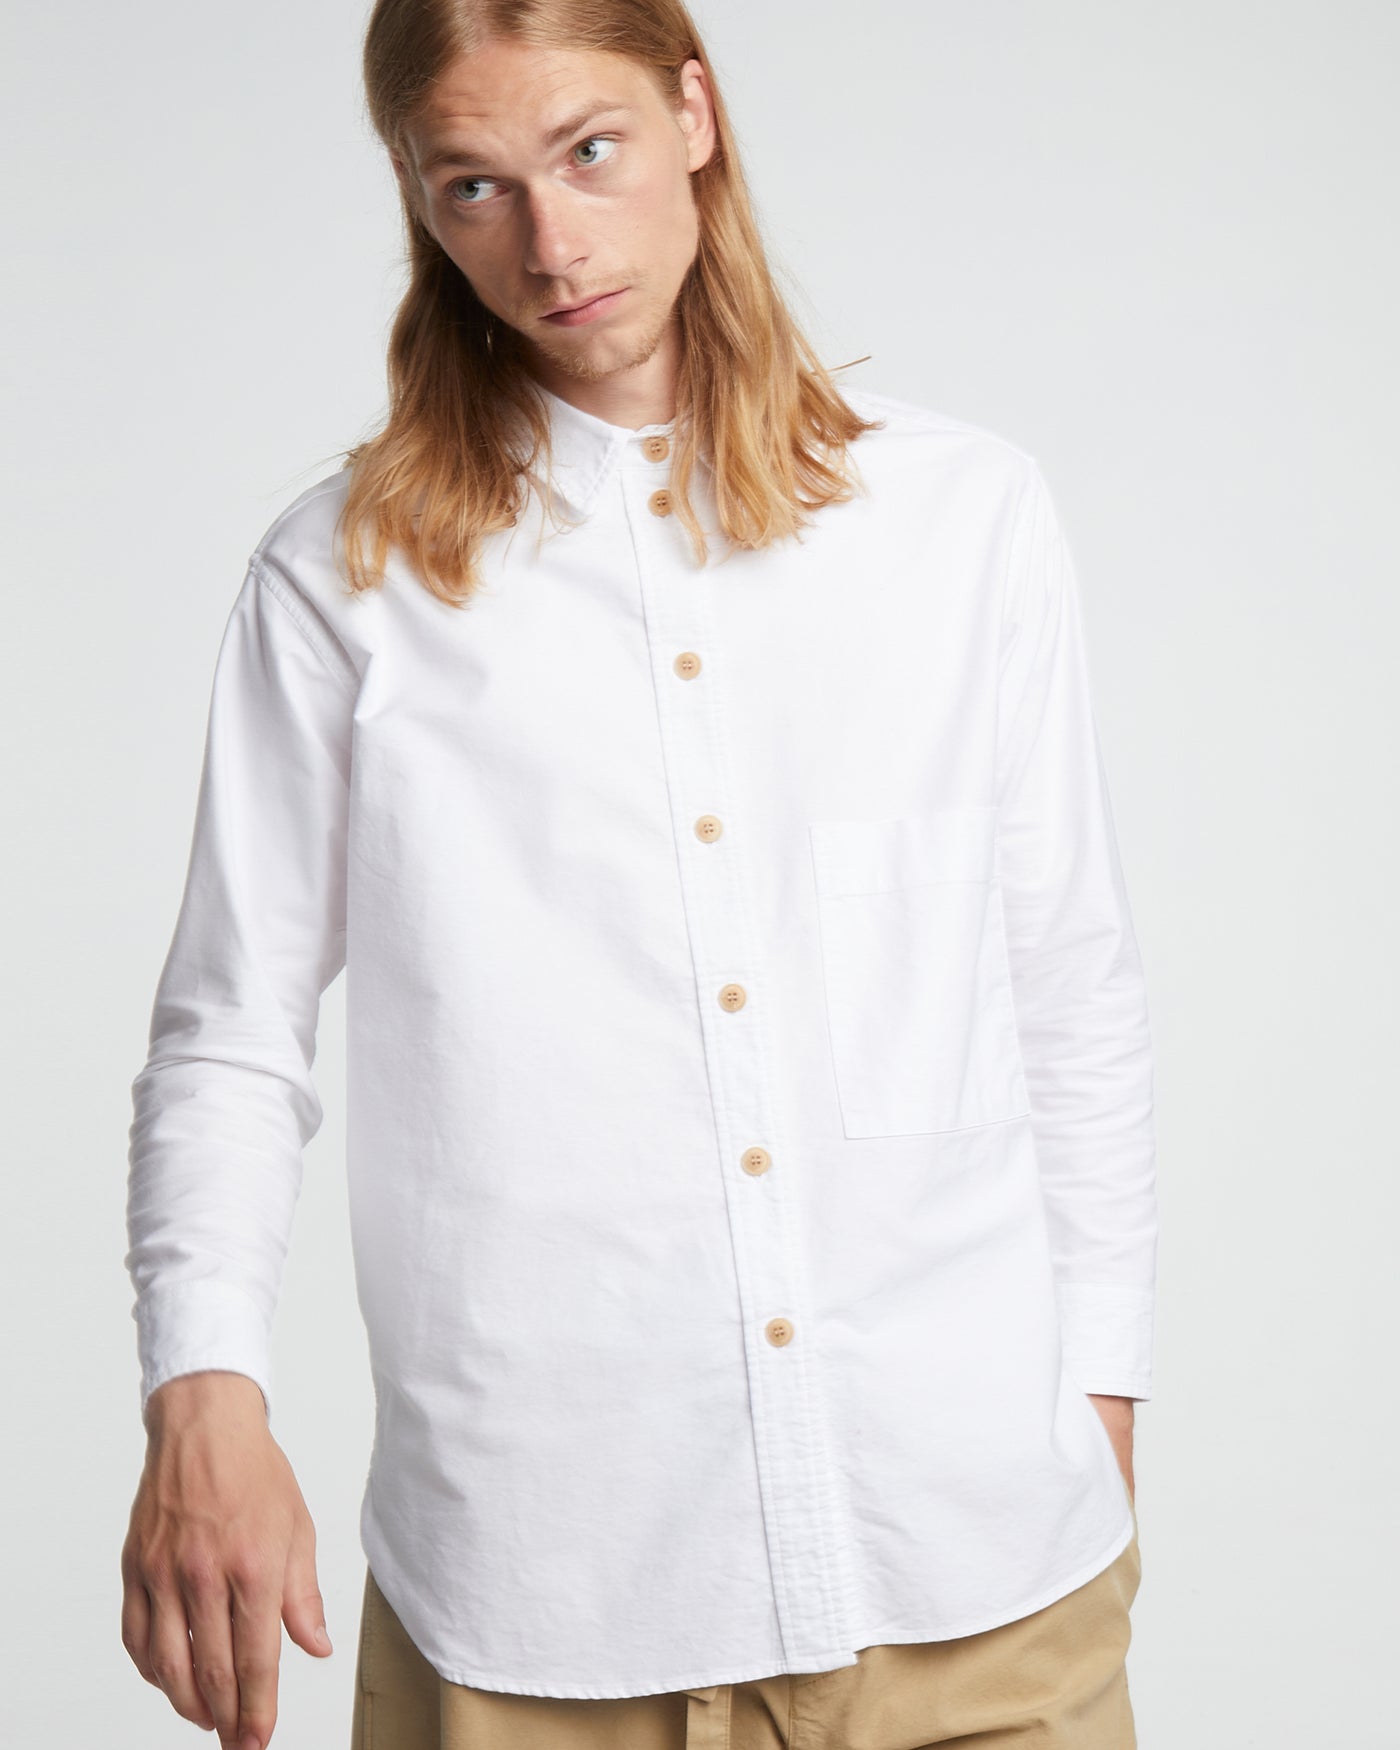 Maxi Shirt Oxford White